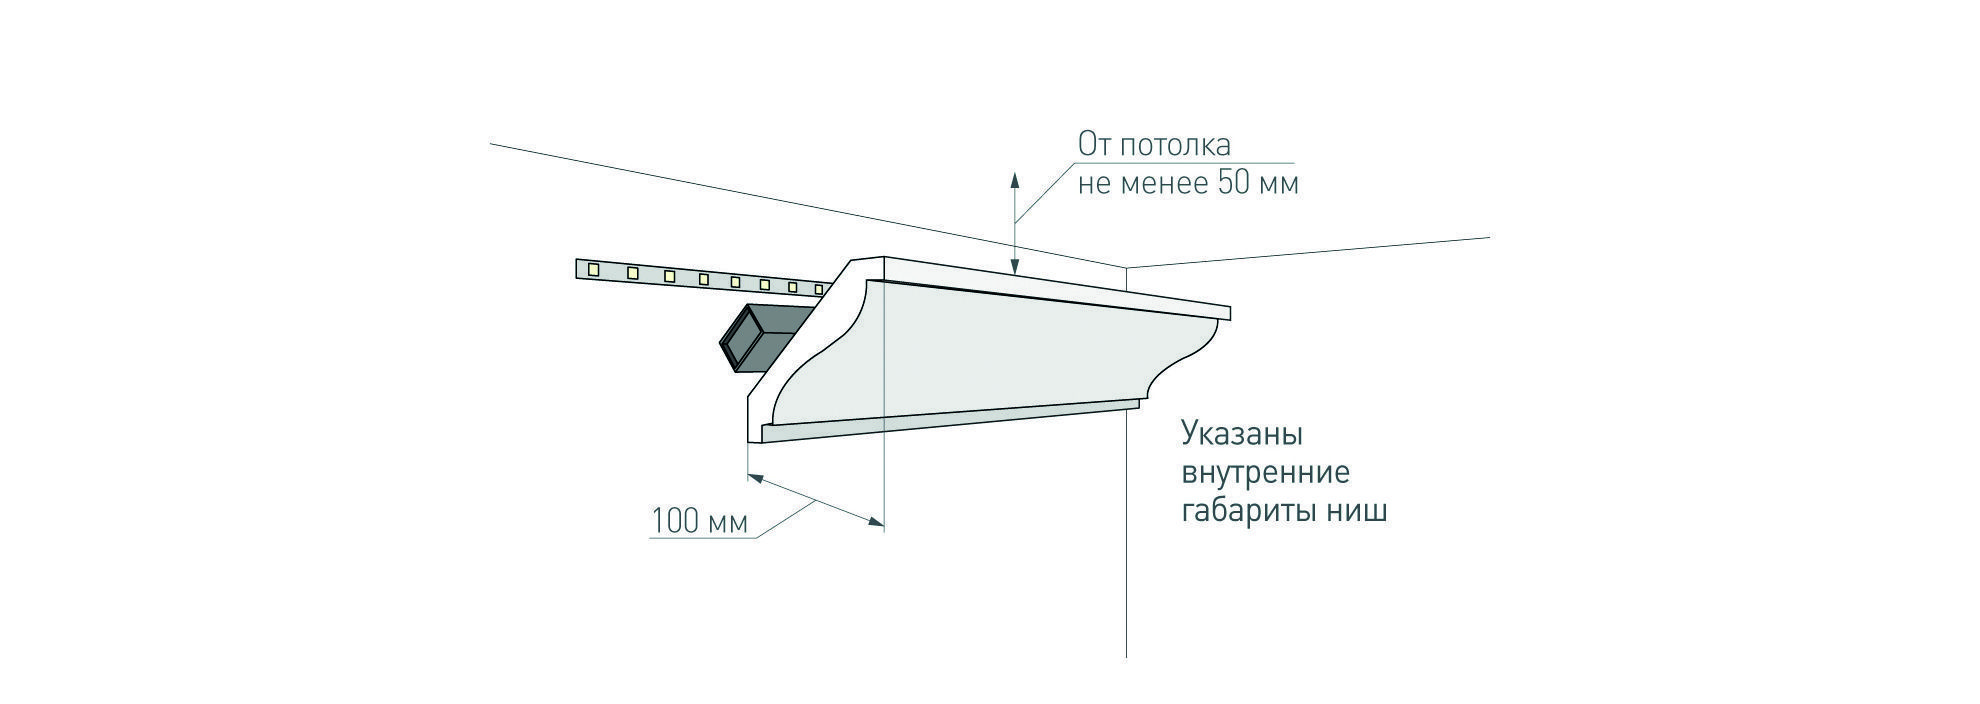 Плинтус для натяжного потолка с подсветкой - виды и порядок монтажа